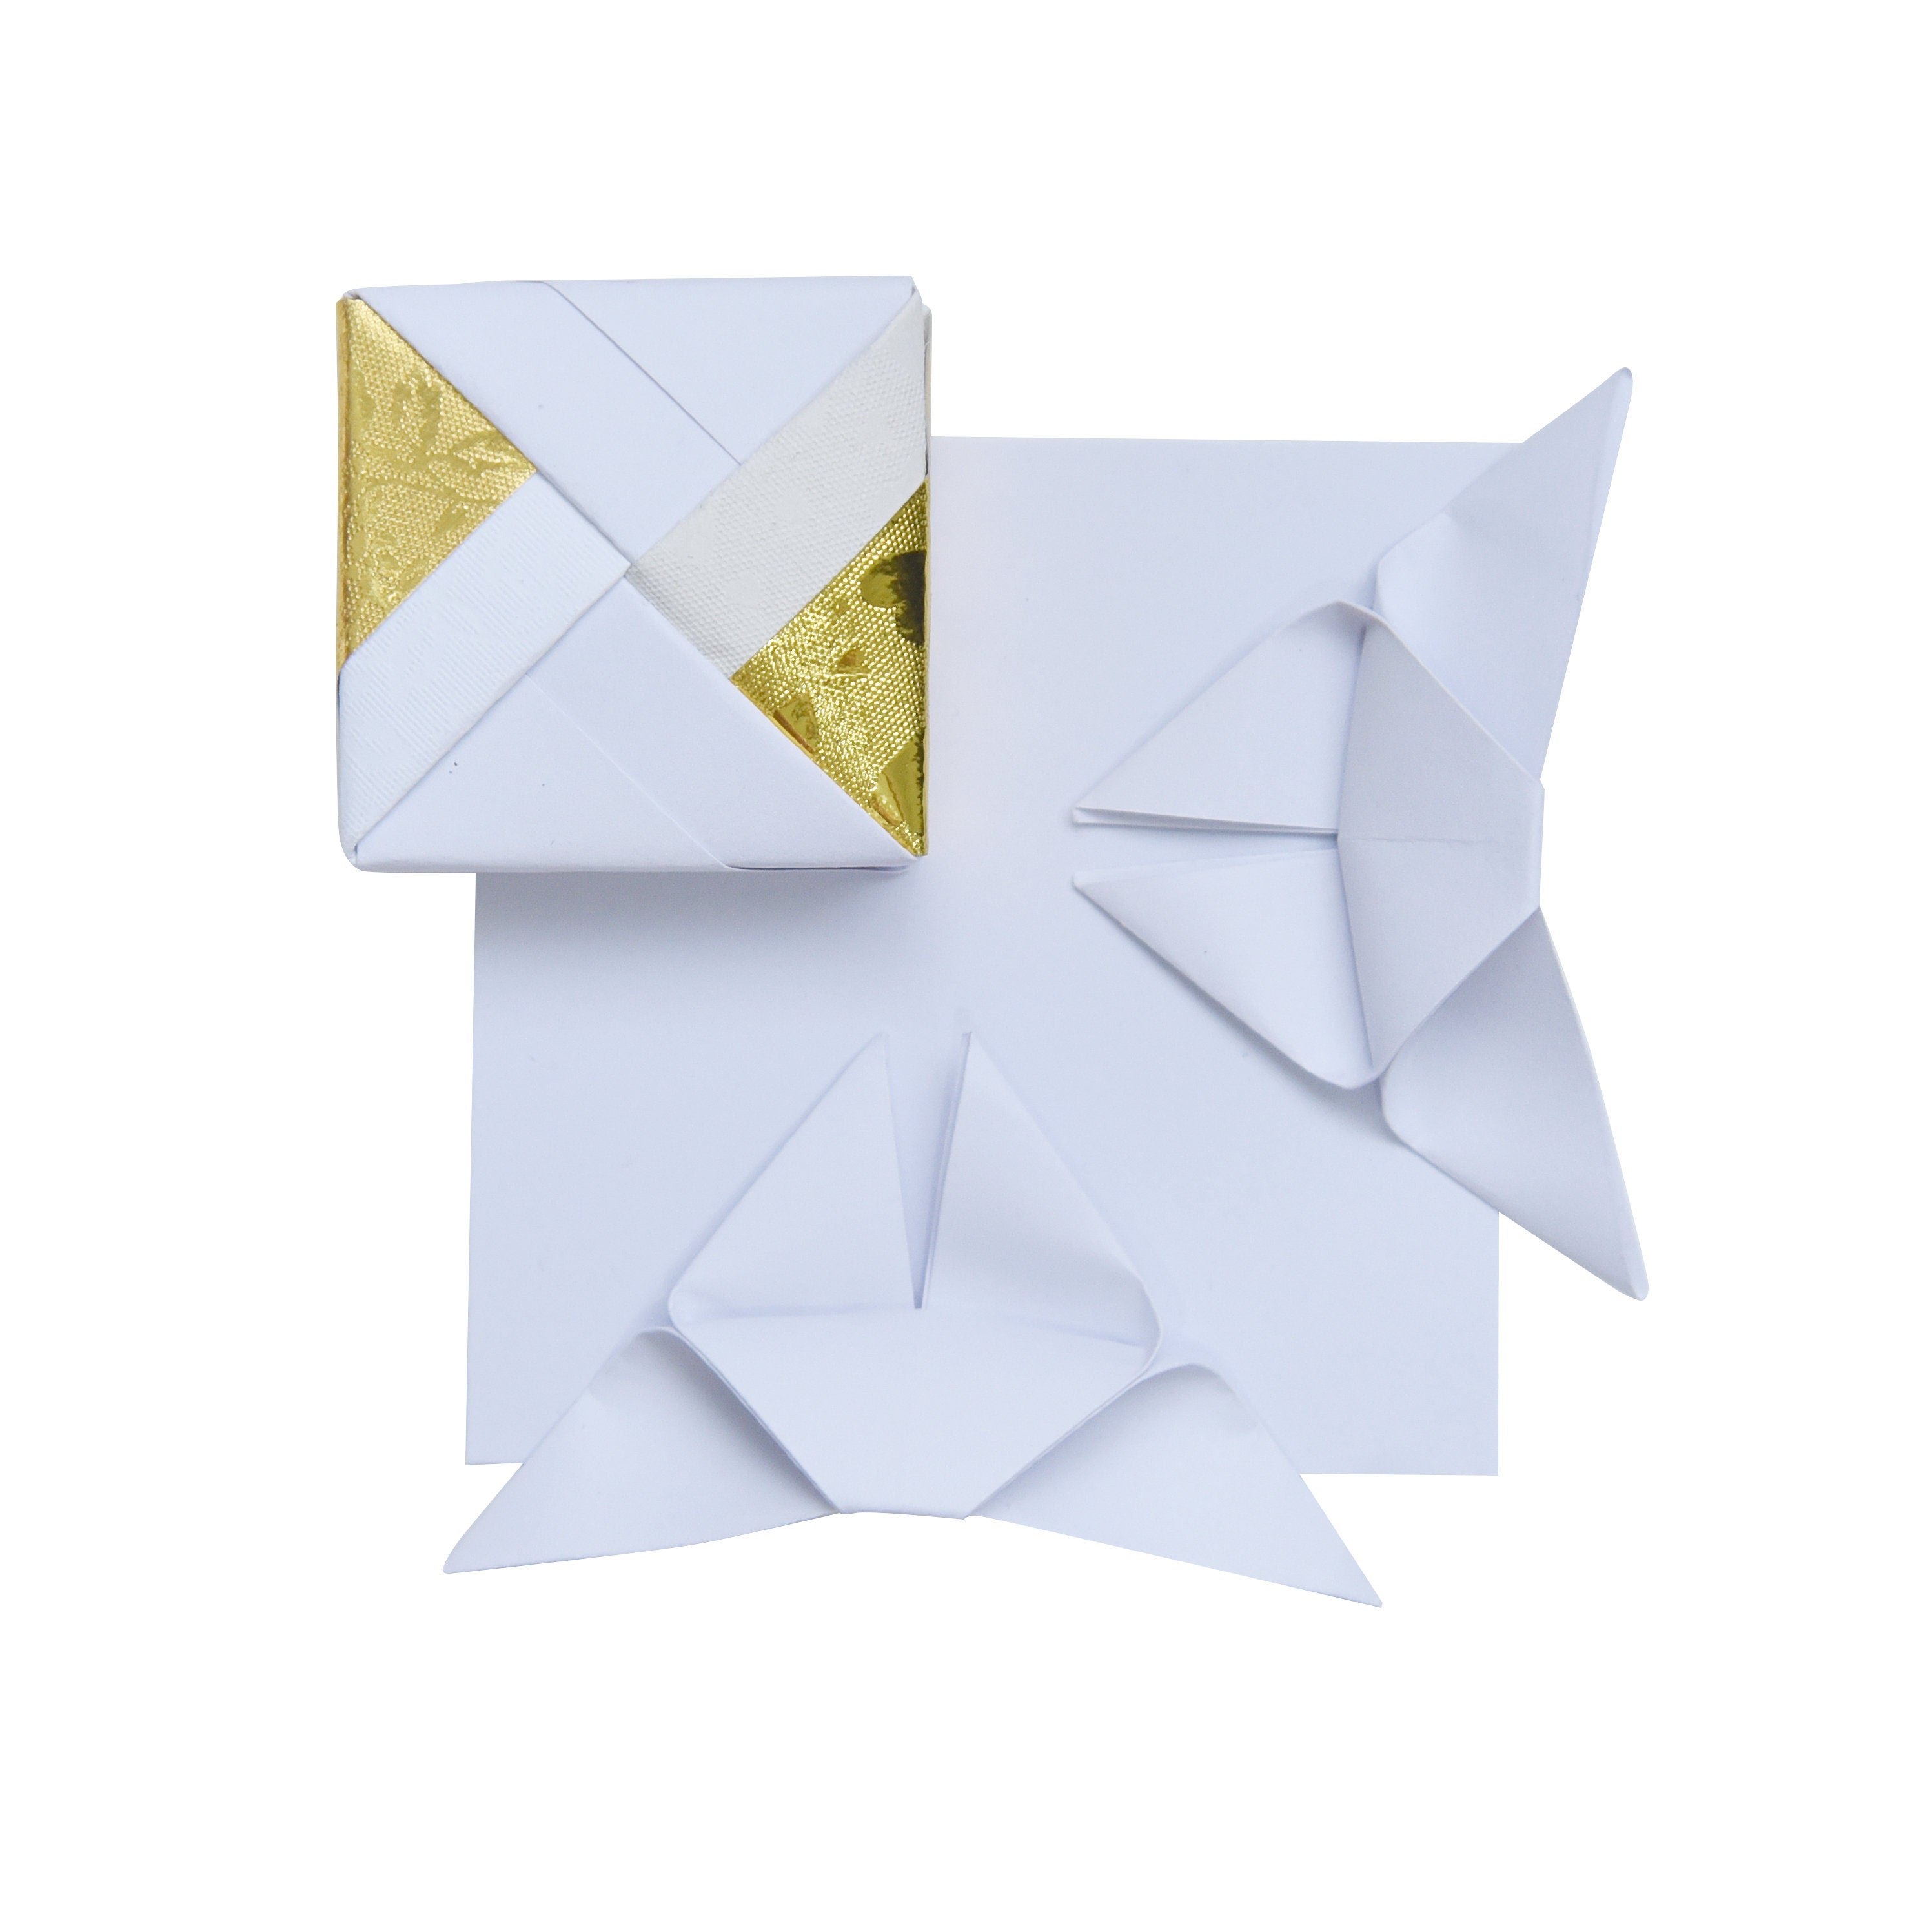 100 Hojas de Papel Origami - 3x3 pulgadas - Paquete de Papel Cuadrado para Plegar, Grullas de Origami y Decoración - S01